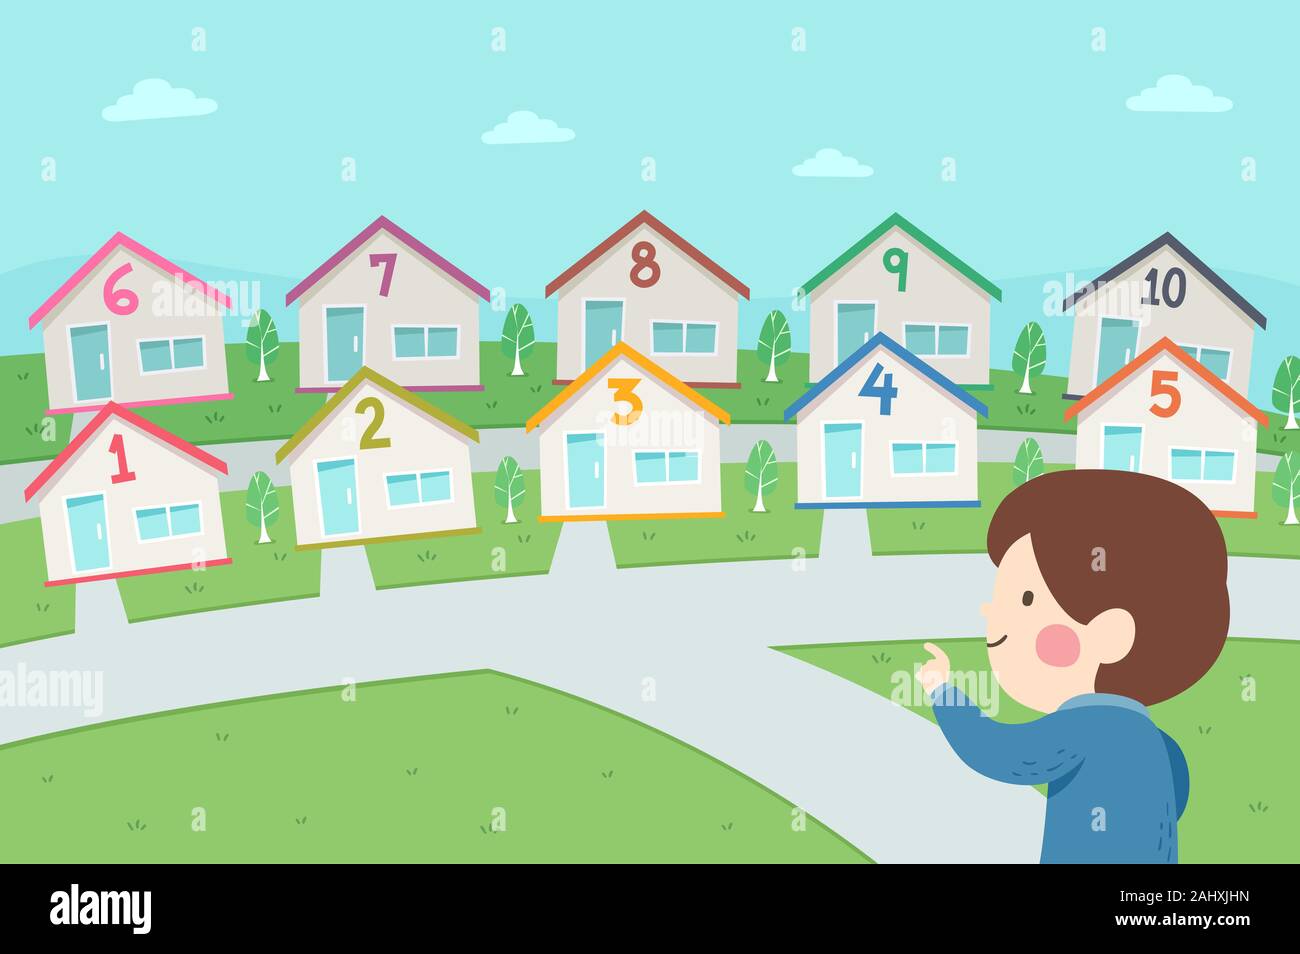 Illustration d'un enfant garçon pointer et à compter nombre de maisons voisin, chaque chambre avec des numéros de 1 à 10 Banque D'Images